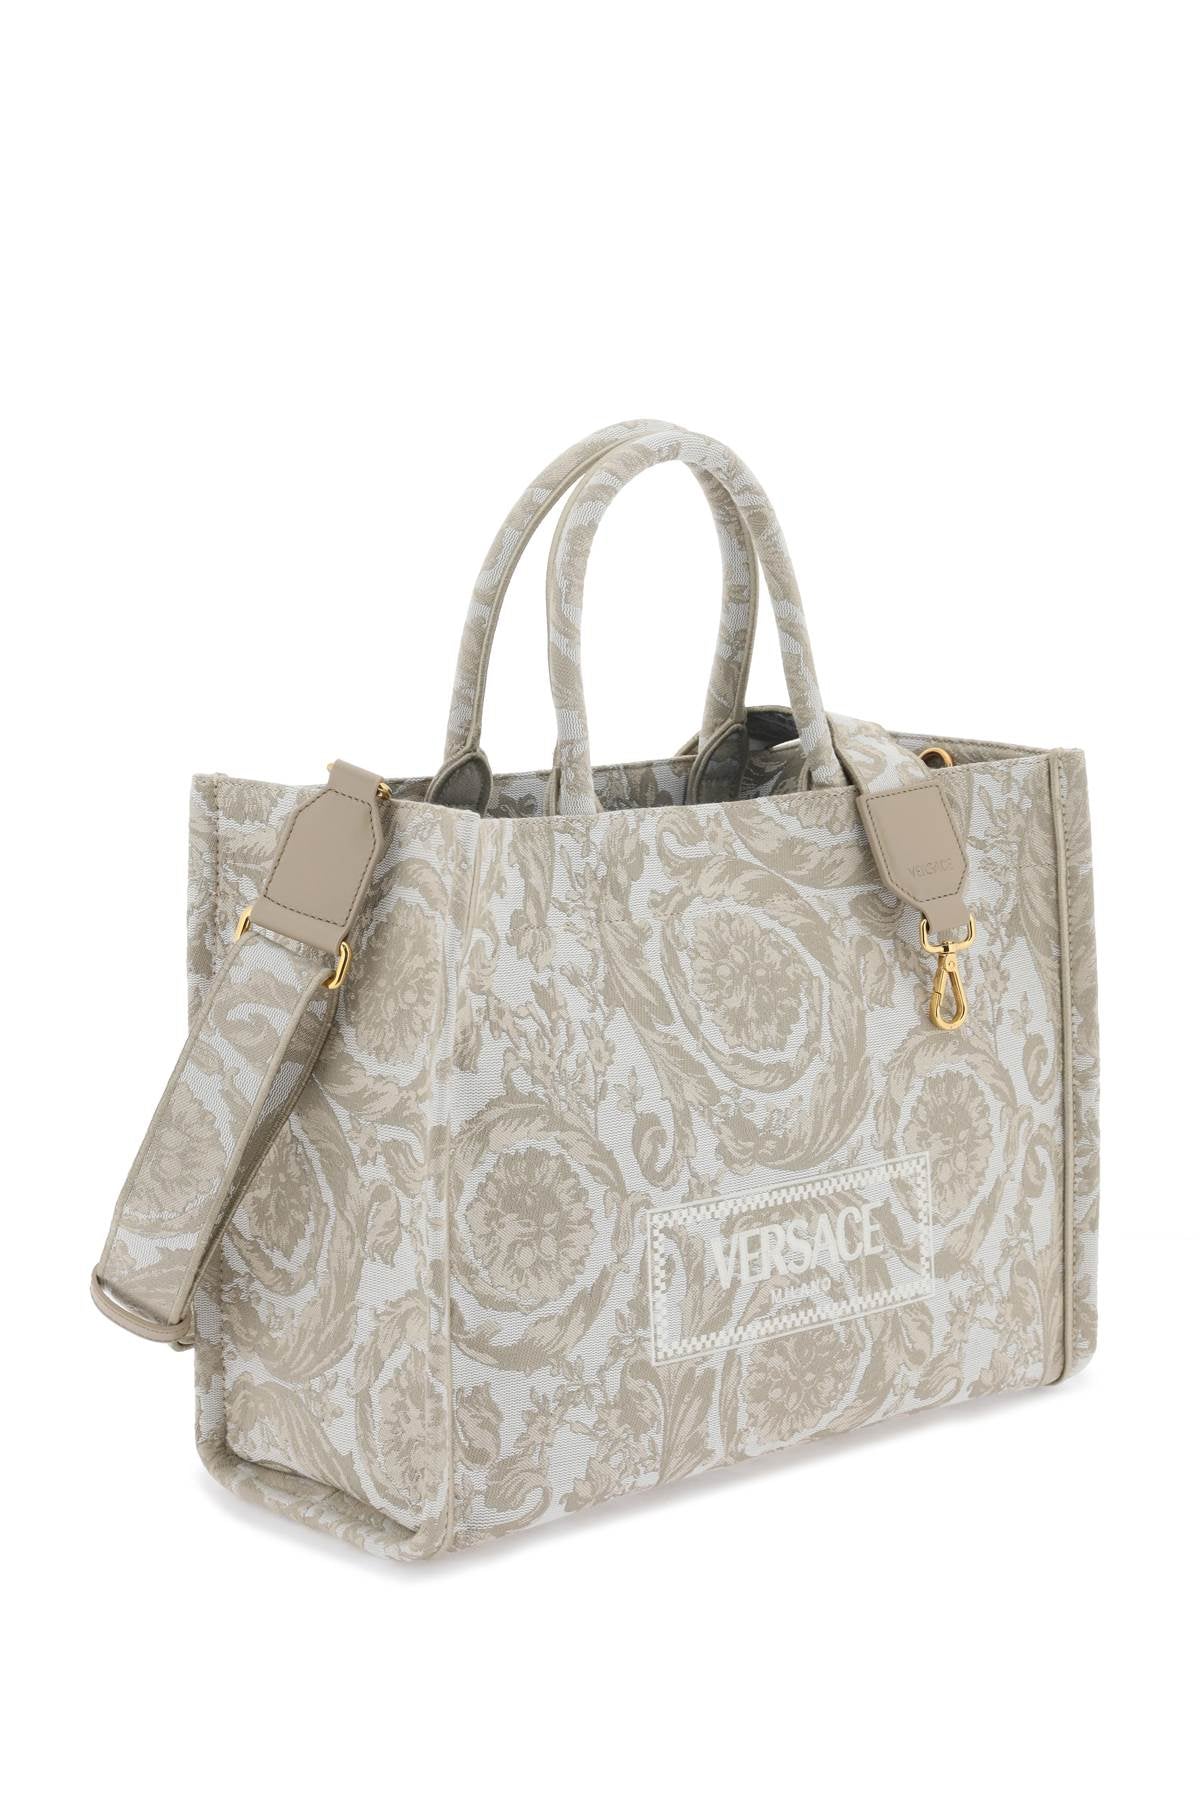 VERSACE ATHENA Baroque Tote Handbag Handbag